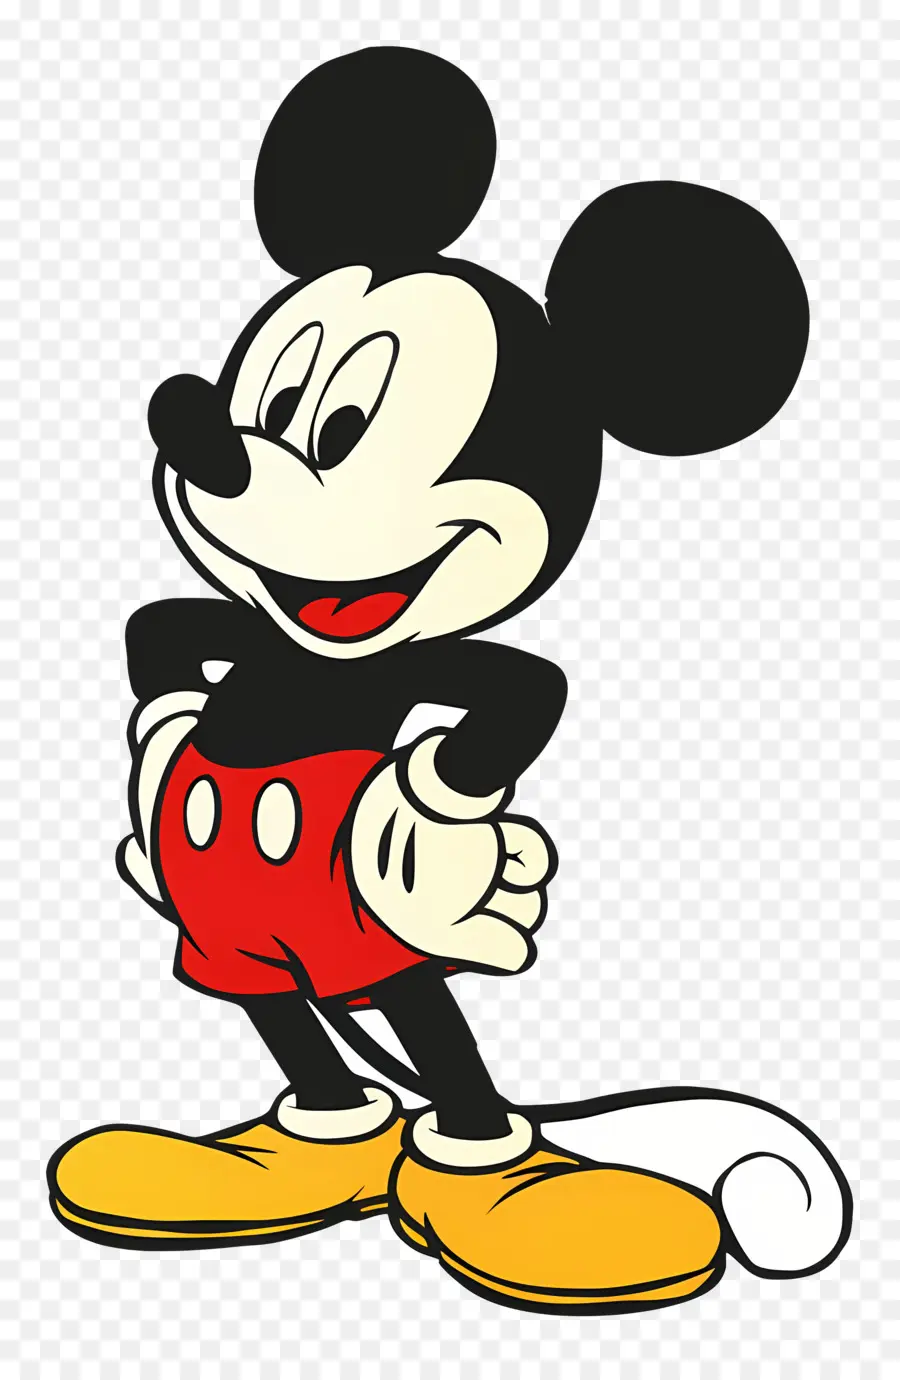 le orecchie di mickey mouse - Cartoon Man nelle orecchie di Topolino in posa